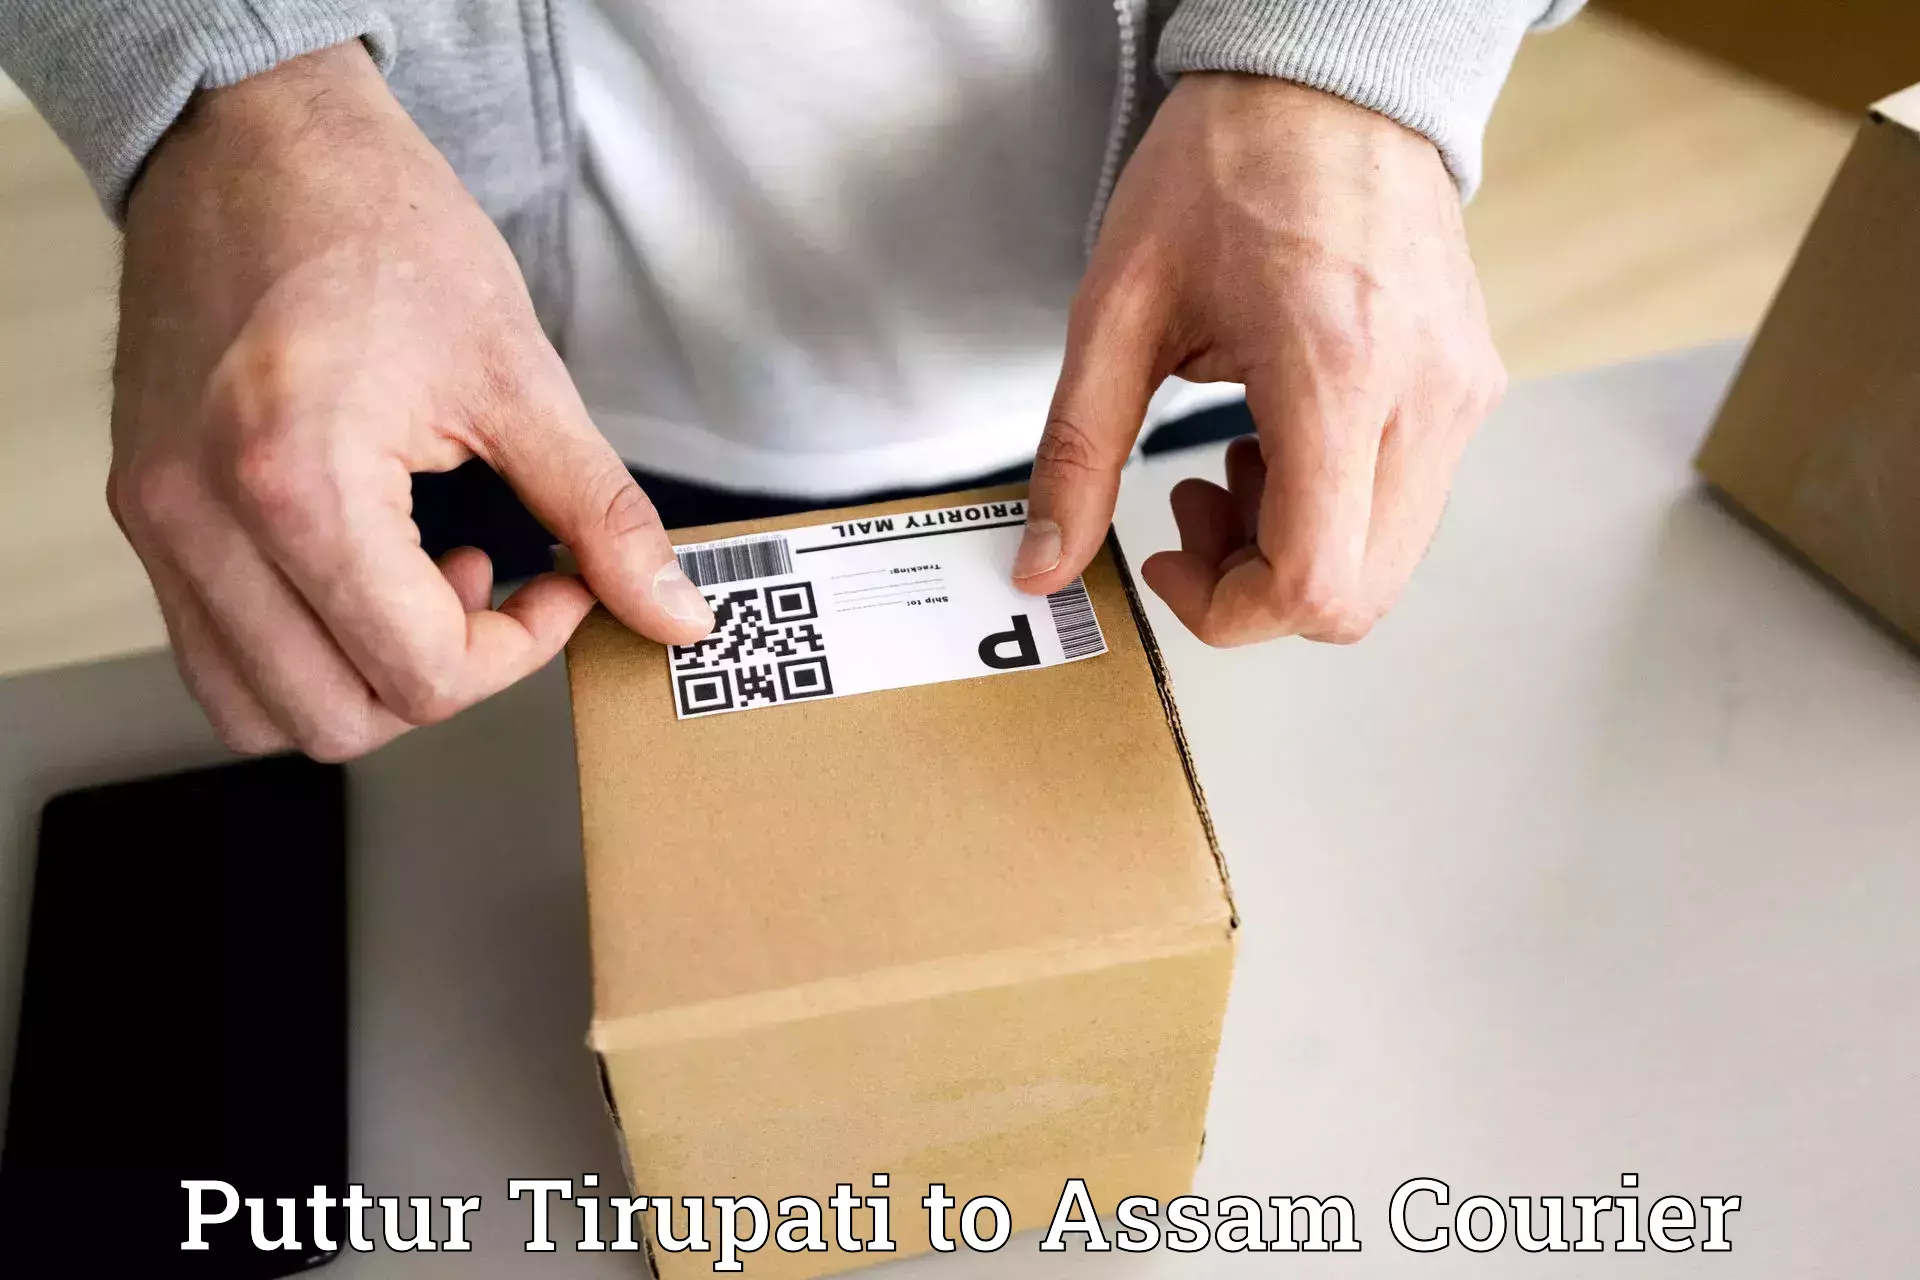 User-friendly courier app Puttur Tirupati to Mazbat